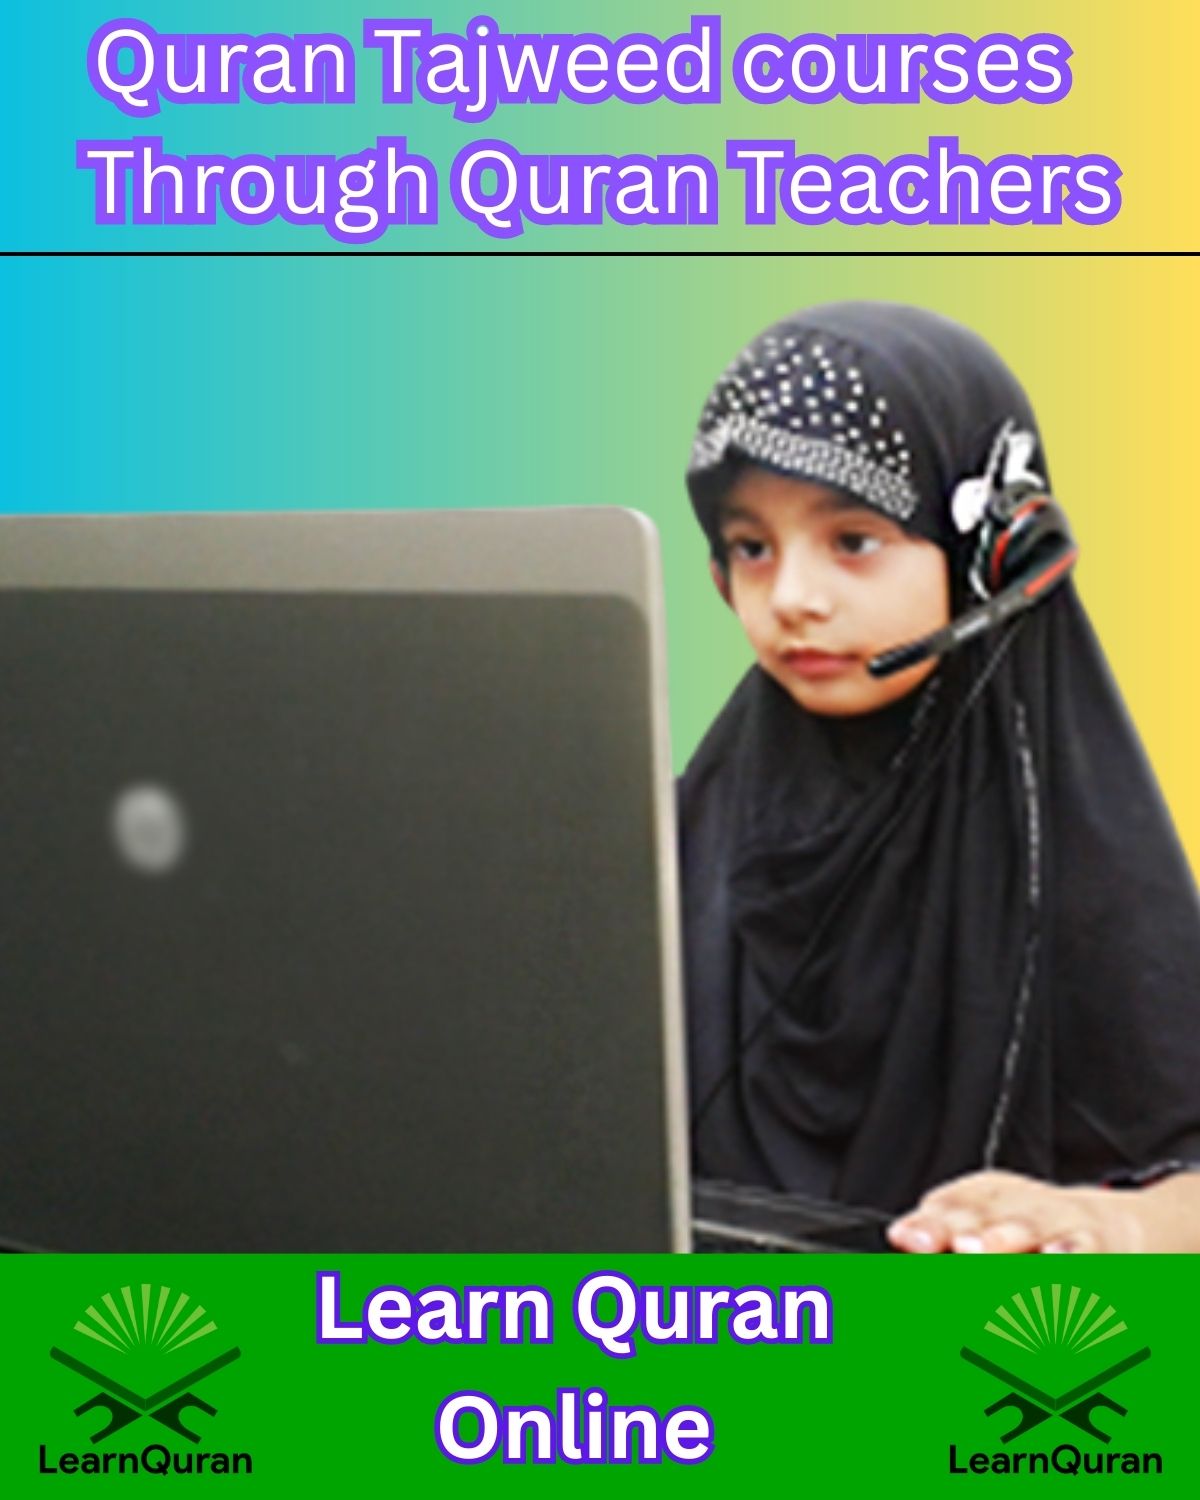 Quran Tajweed courses